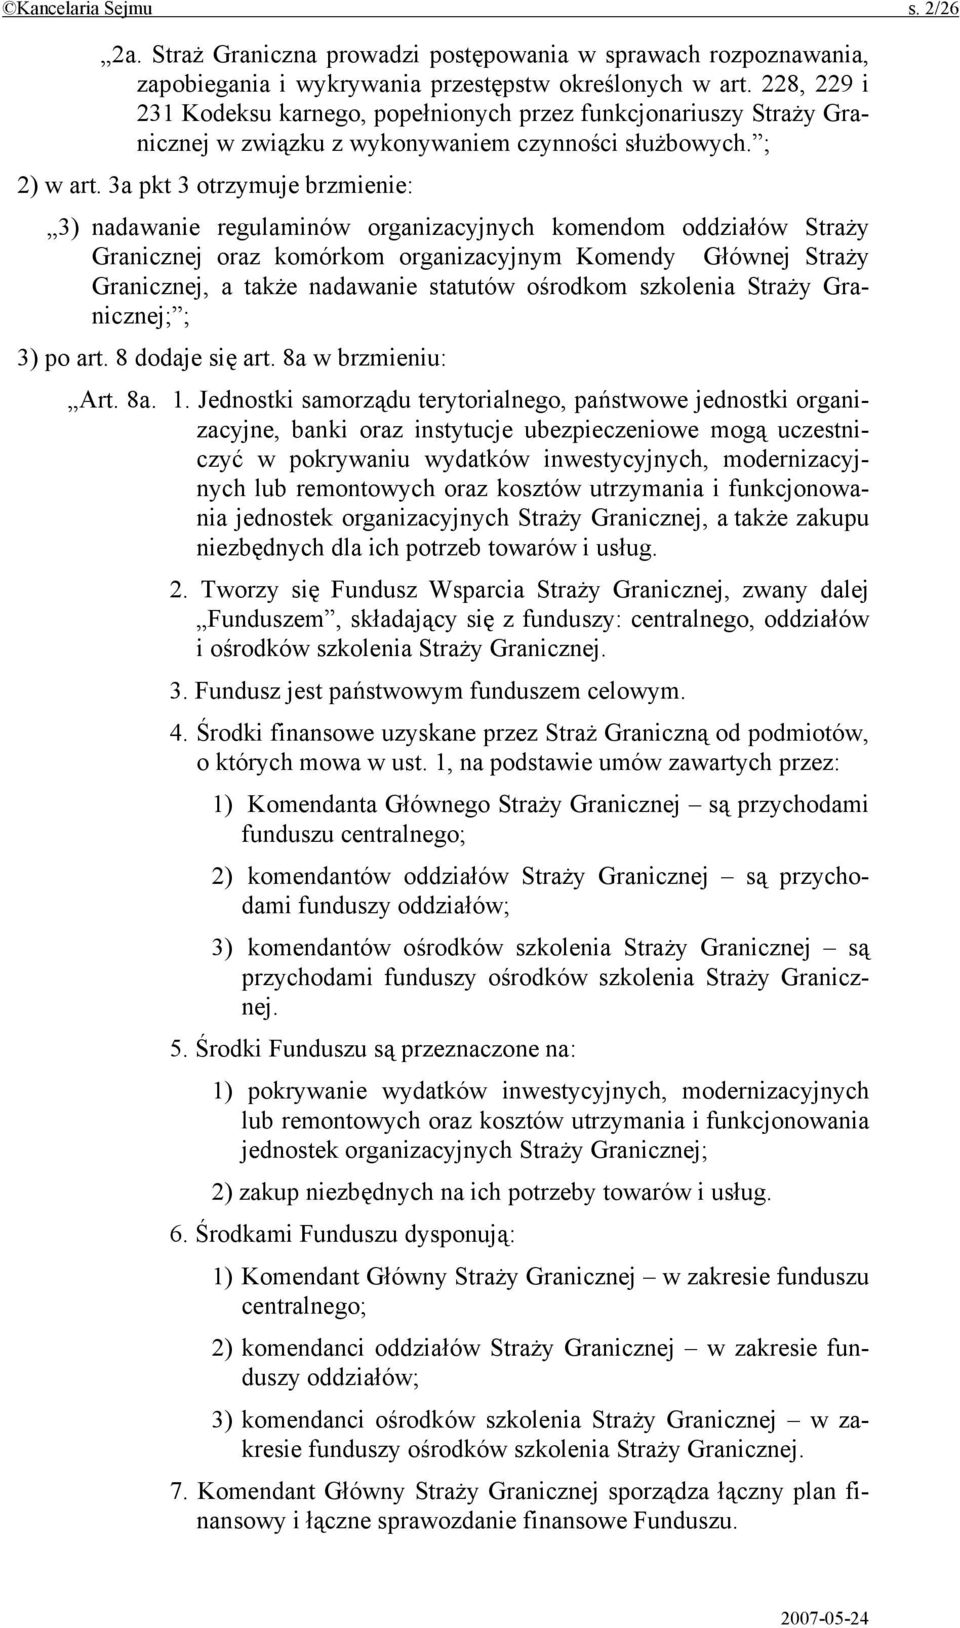 3a pkt 3 otrzymuje brzmienie: 3) nadawanie regulaminów organizacyjnych komendom oddziałów Straży Granicznej oraz komórkom organizacyjnym Komendy Głównej Straży Granicznej, a także nadawanie statutów